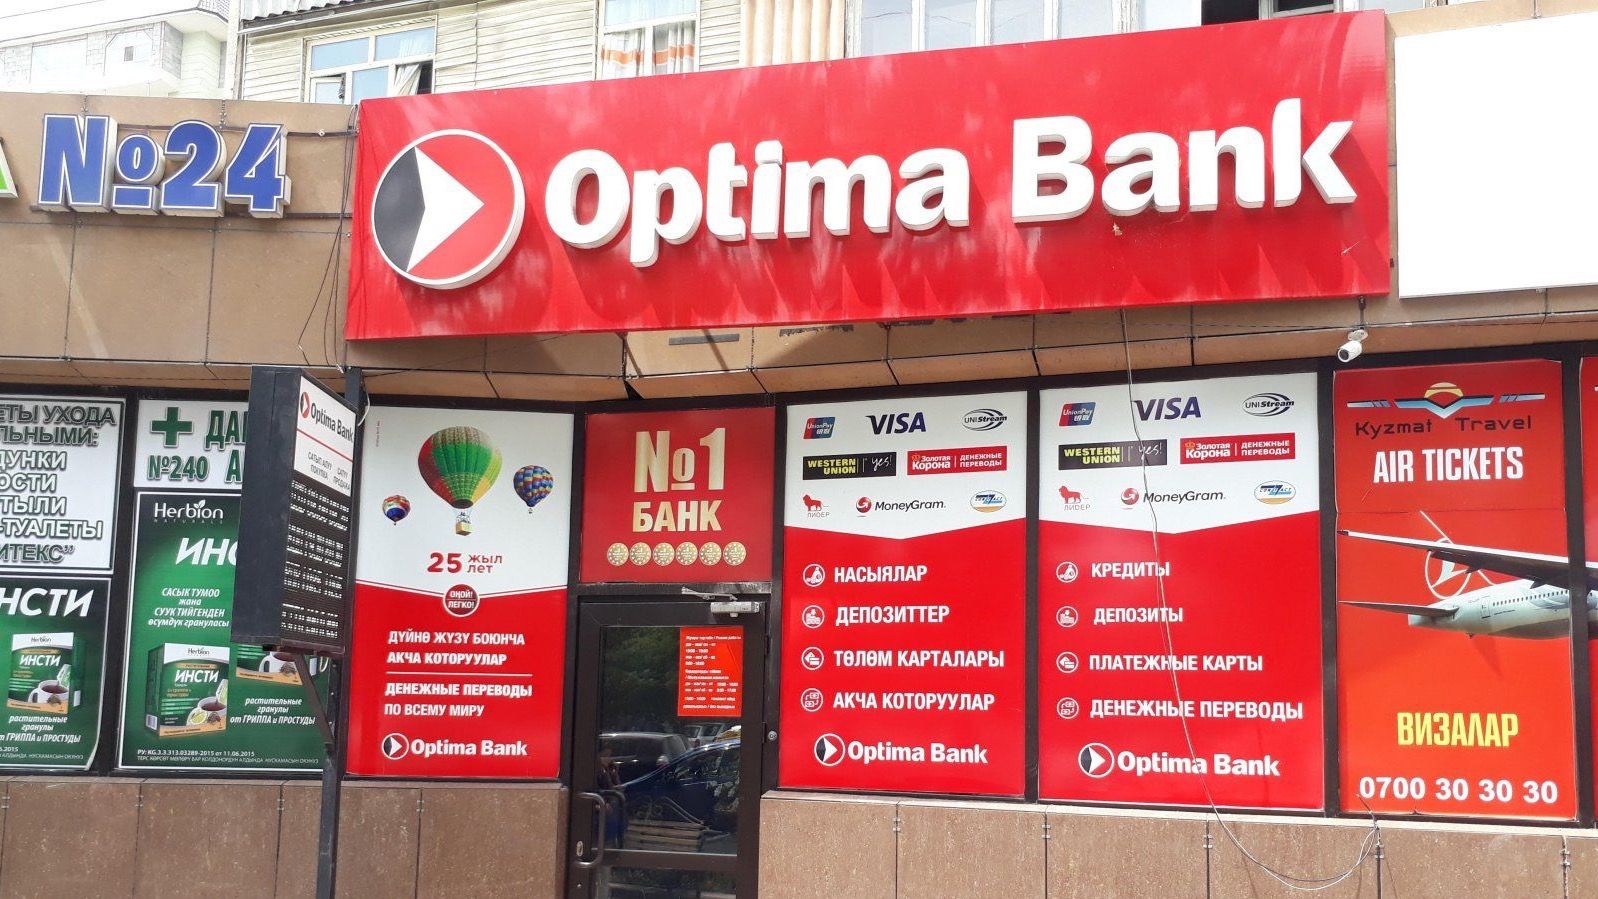 "Оптима банк" утвердит нового председателя совета директоров 18 сентября